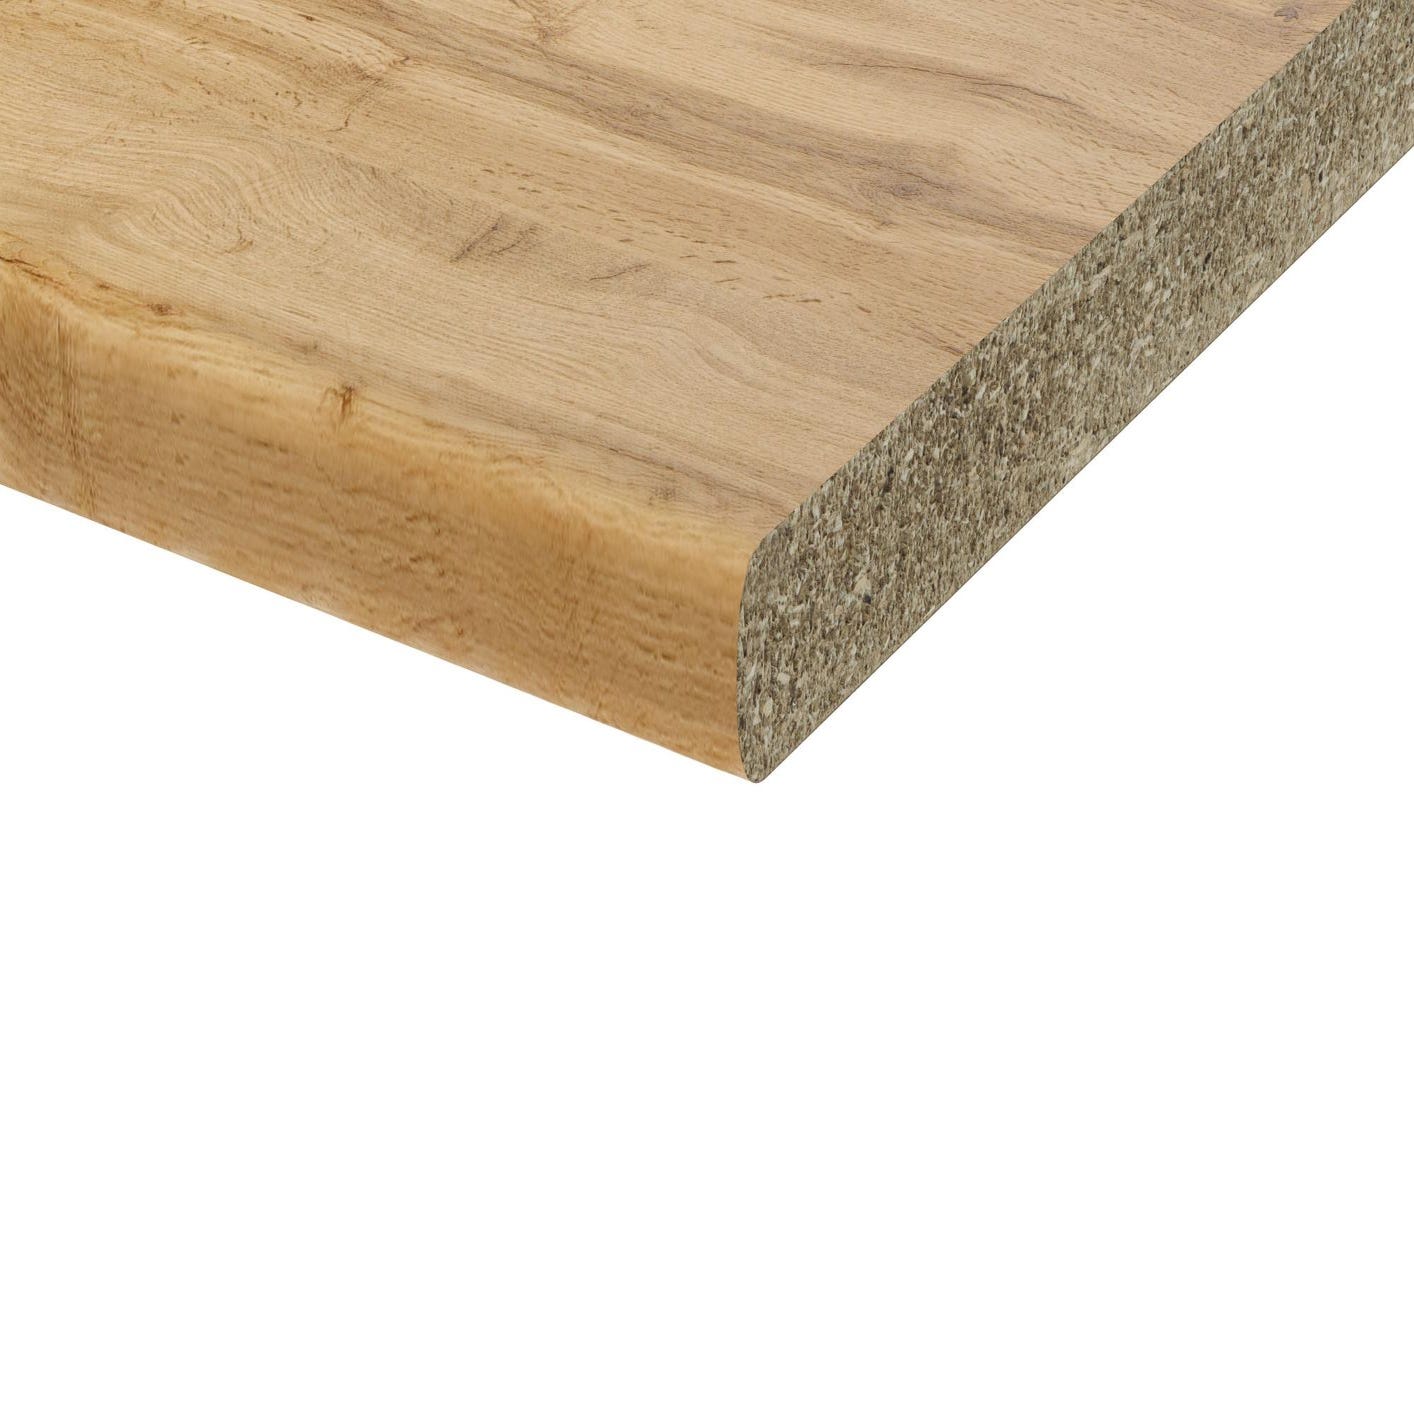 Piano cucina in pannello di truciolato legno oak L 300 x P 60 cm, spessore  2.8 cm